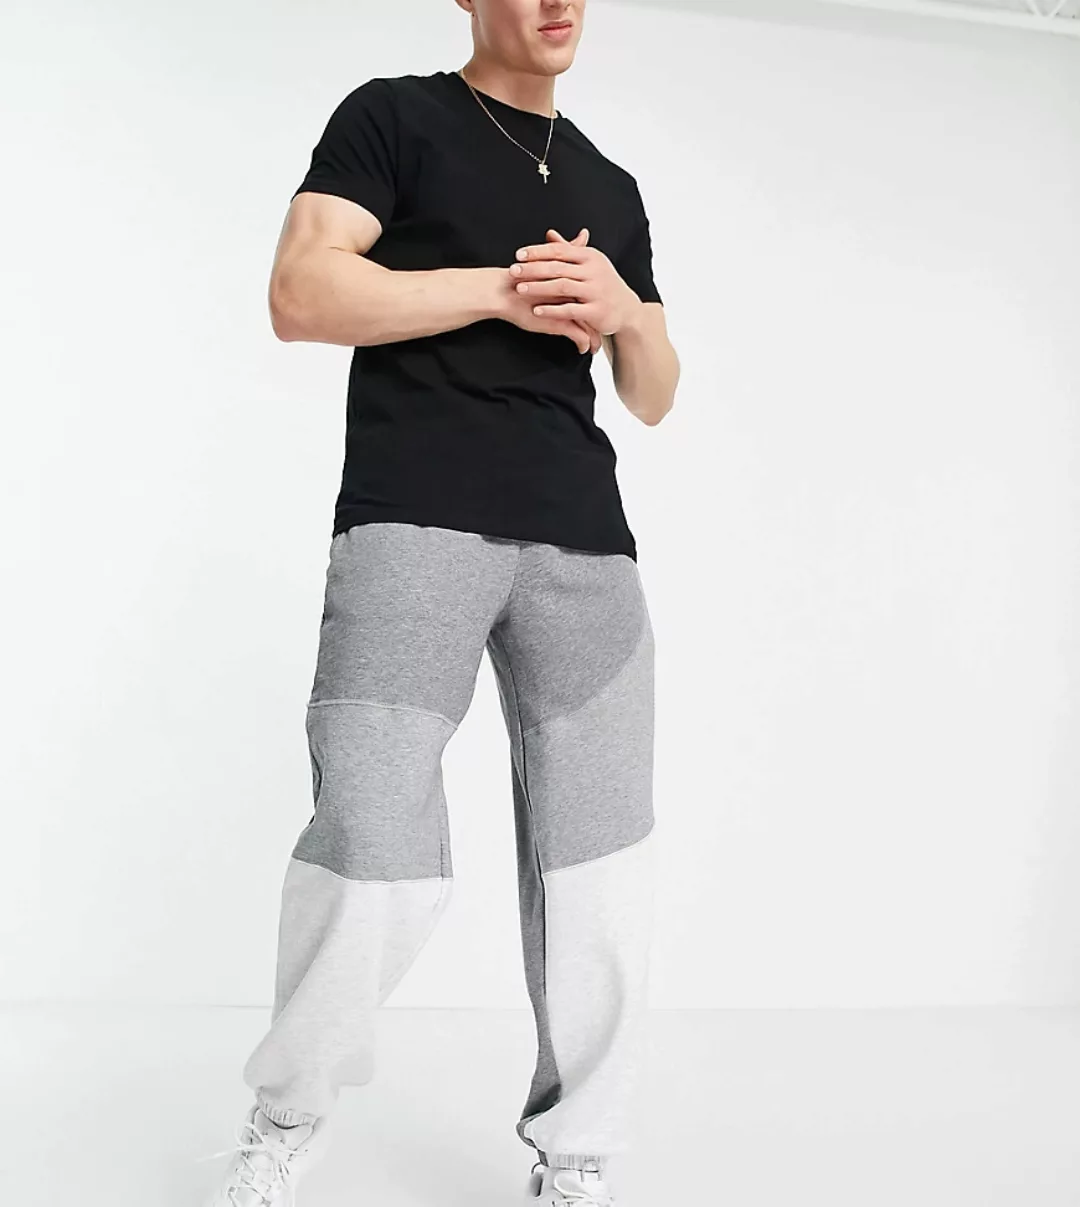 PUMA – Convey – Jogginghose in Grau mit Blockfarbendesign – exklusiv bei AS günstig online kaufen